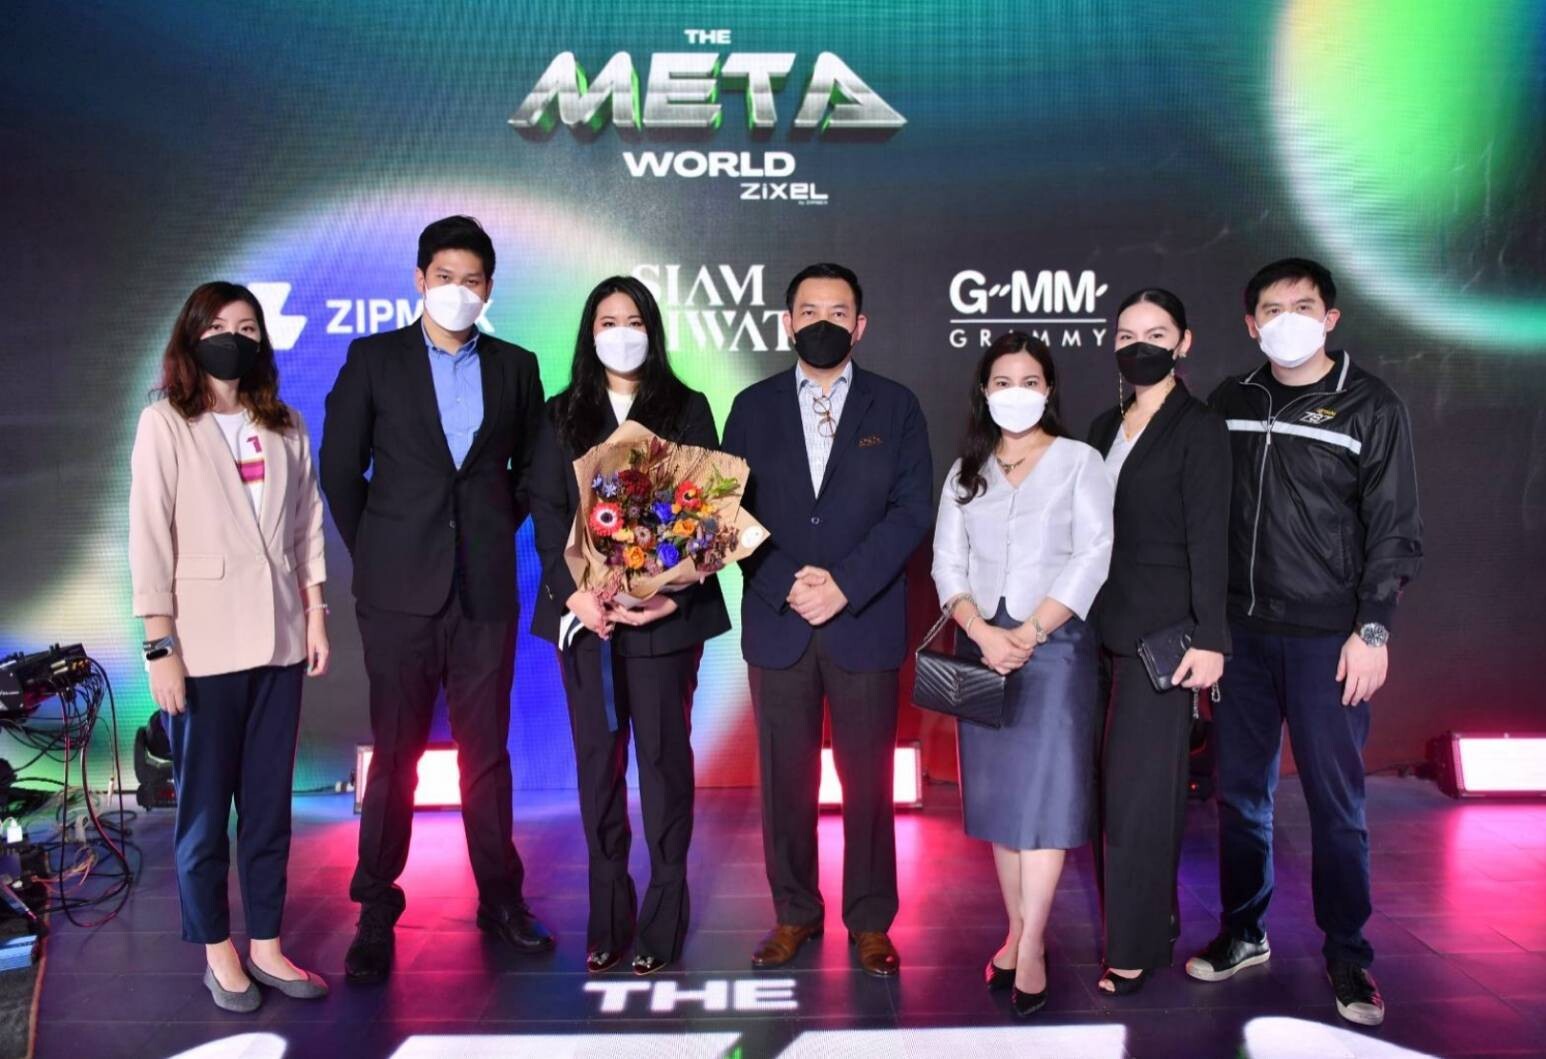 การบินไทยเข้าร่วมนิทรรศการ Metaverse ครั้งแรกในเอเชียตะวันออกเฉียงใต้ "The Metaworld by Zixel"  พร้อมรับกระแสการเข้าสู่โลกยุคดิจิทัล